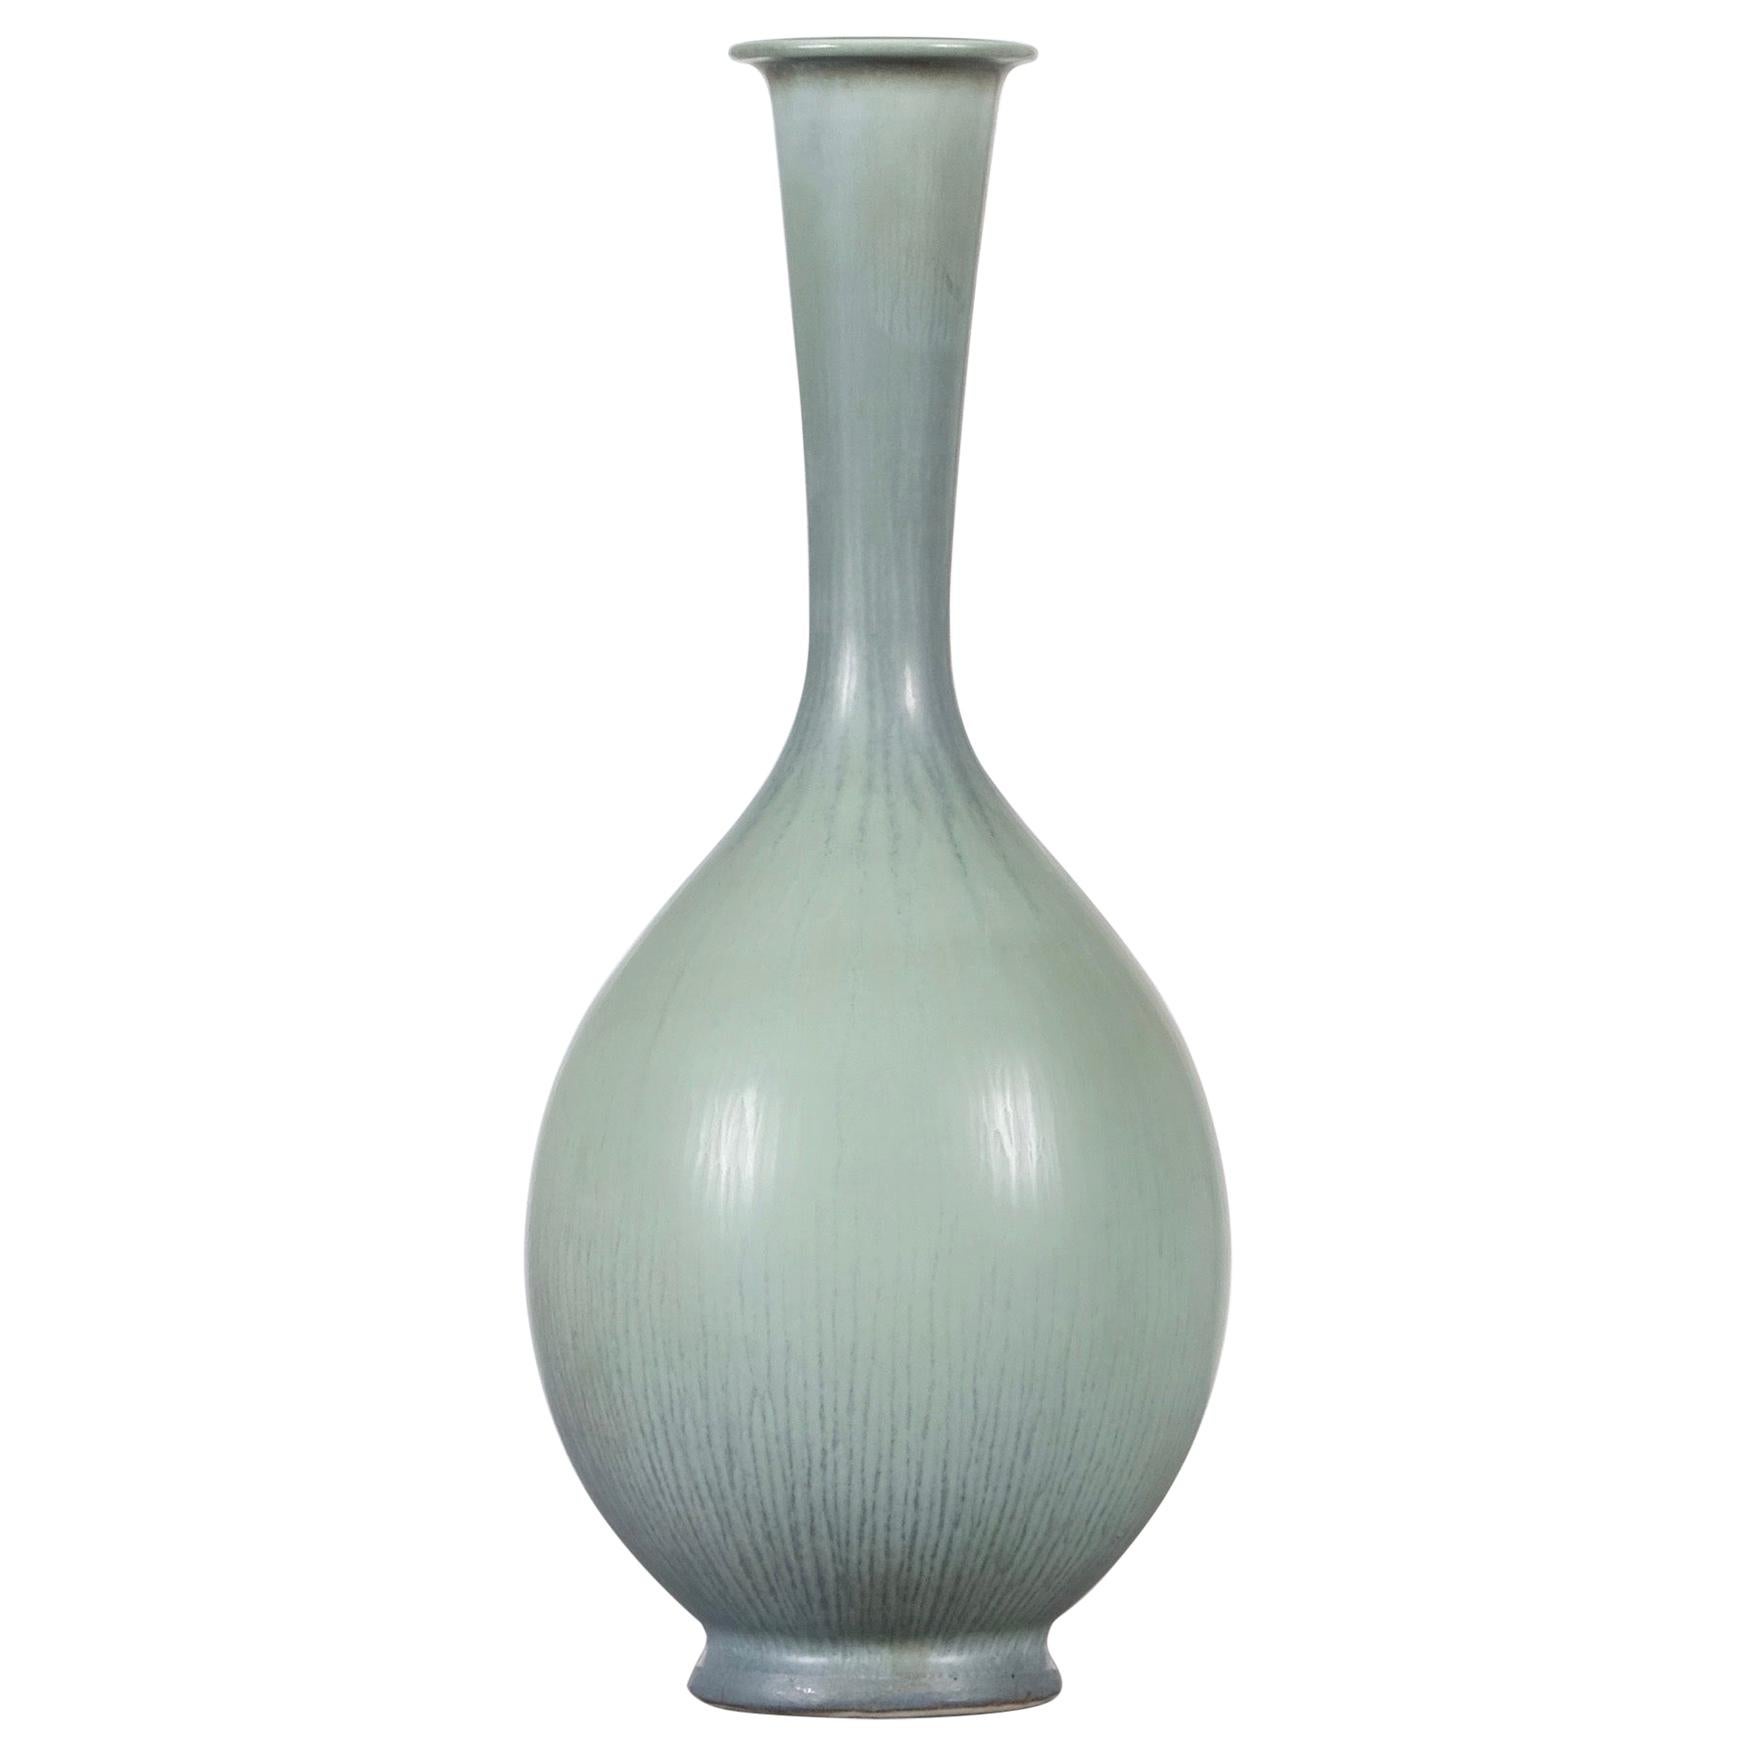 Berndt Friberg Studio Ceramic Vase, Sweden, 1950s